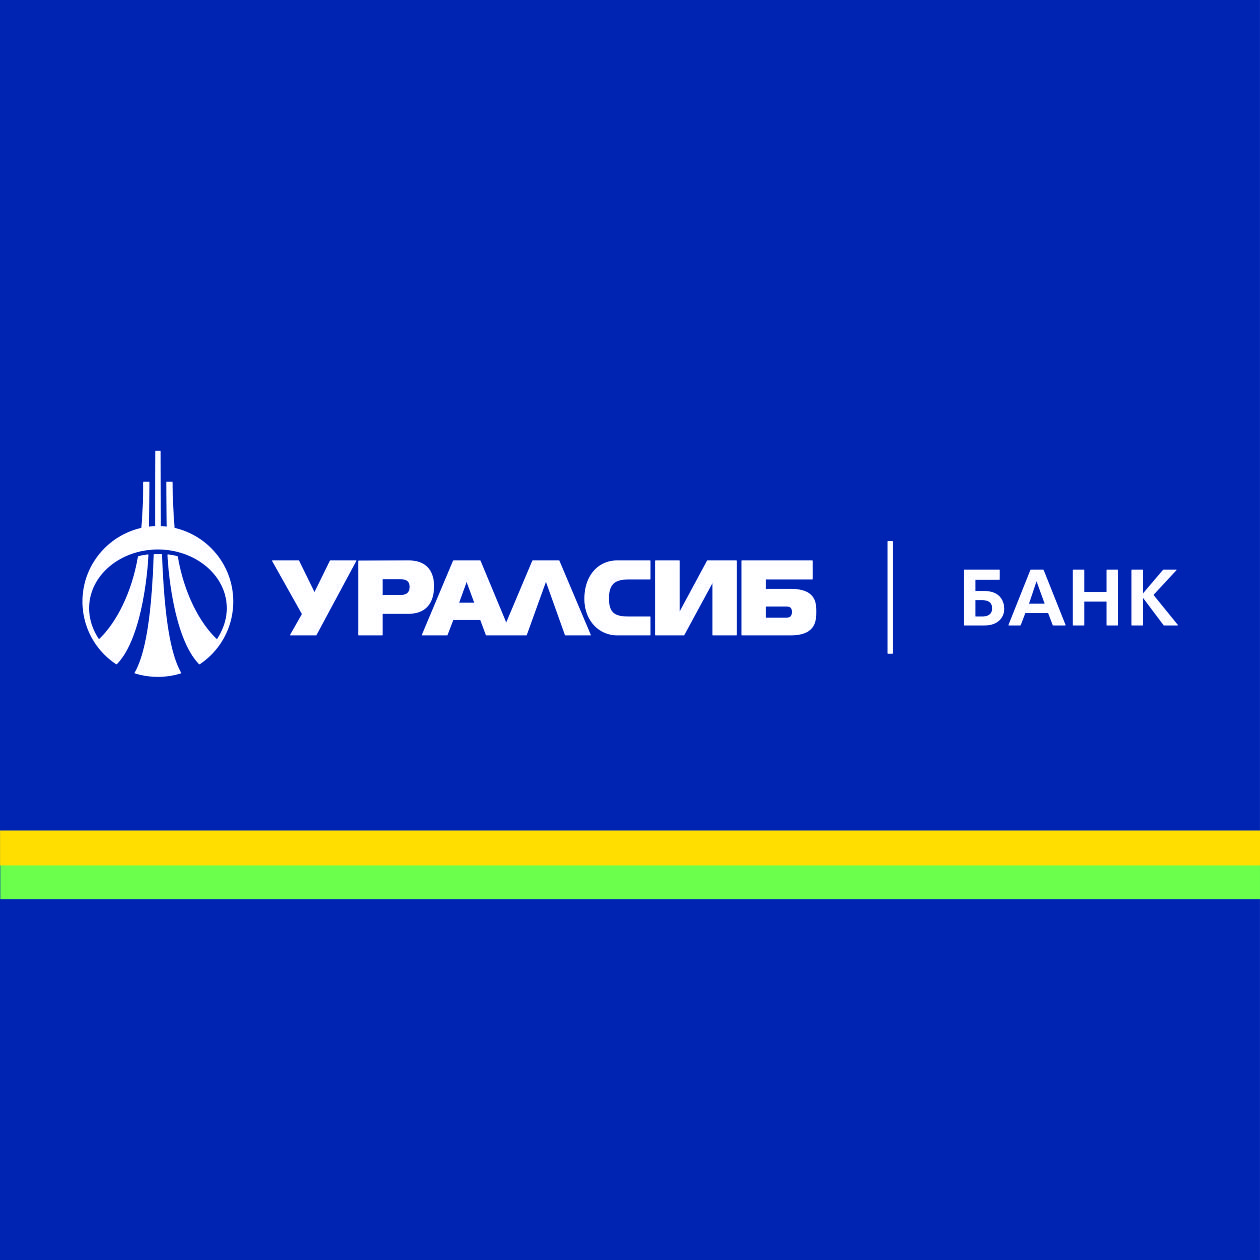 Банк УРАЛСИБ провел в Екатеринбурге встречу с представителями партнерской сети сегмента МСБ